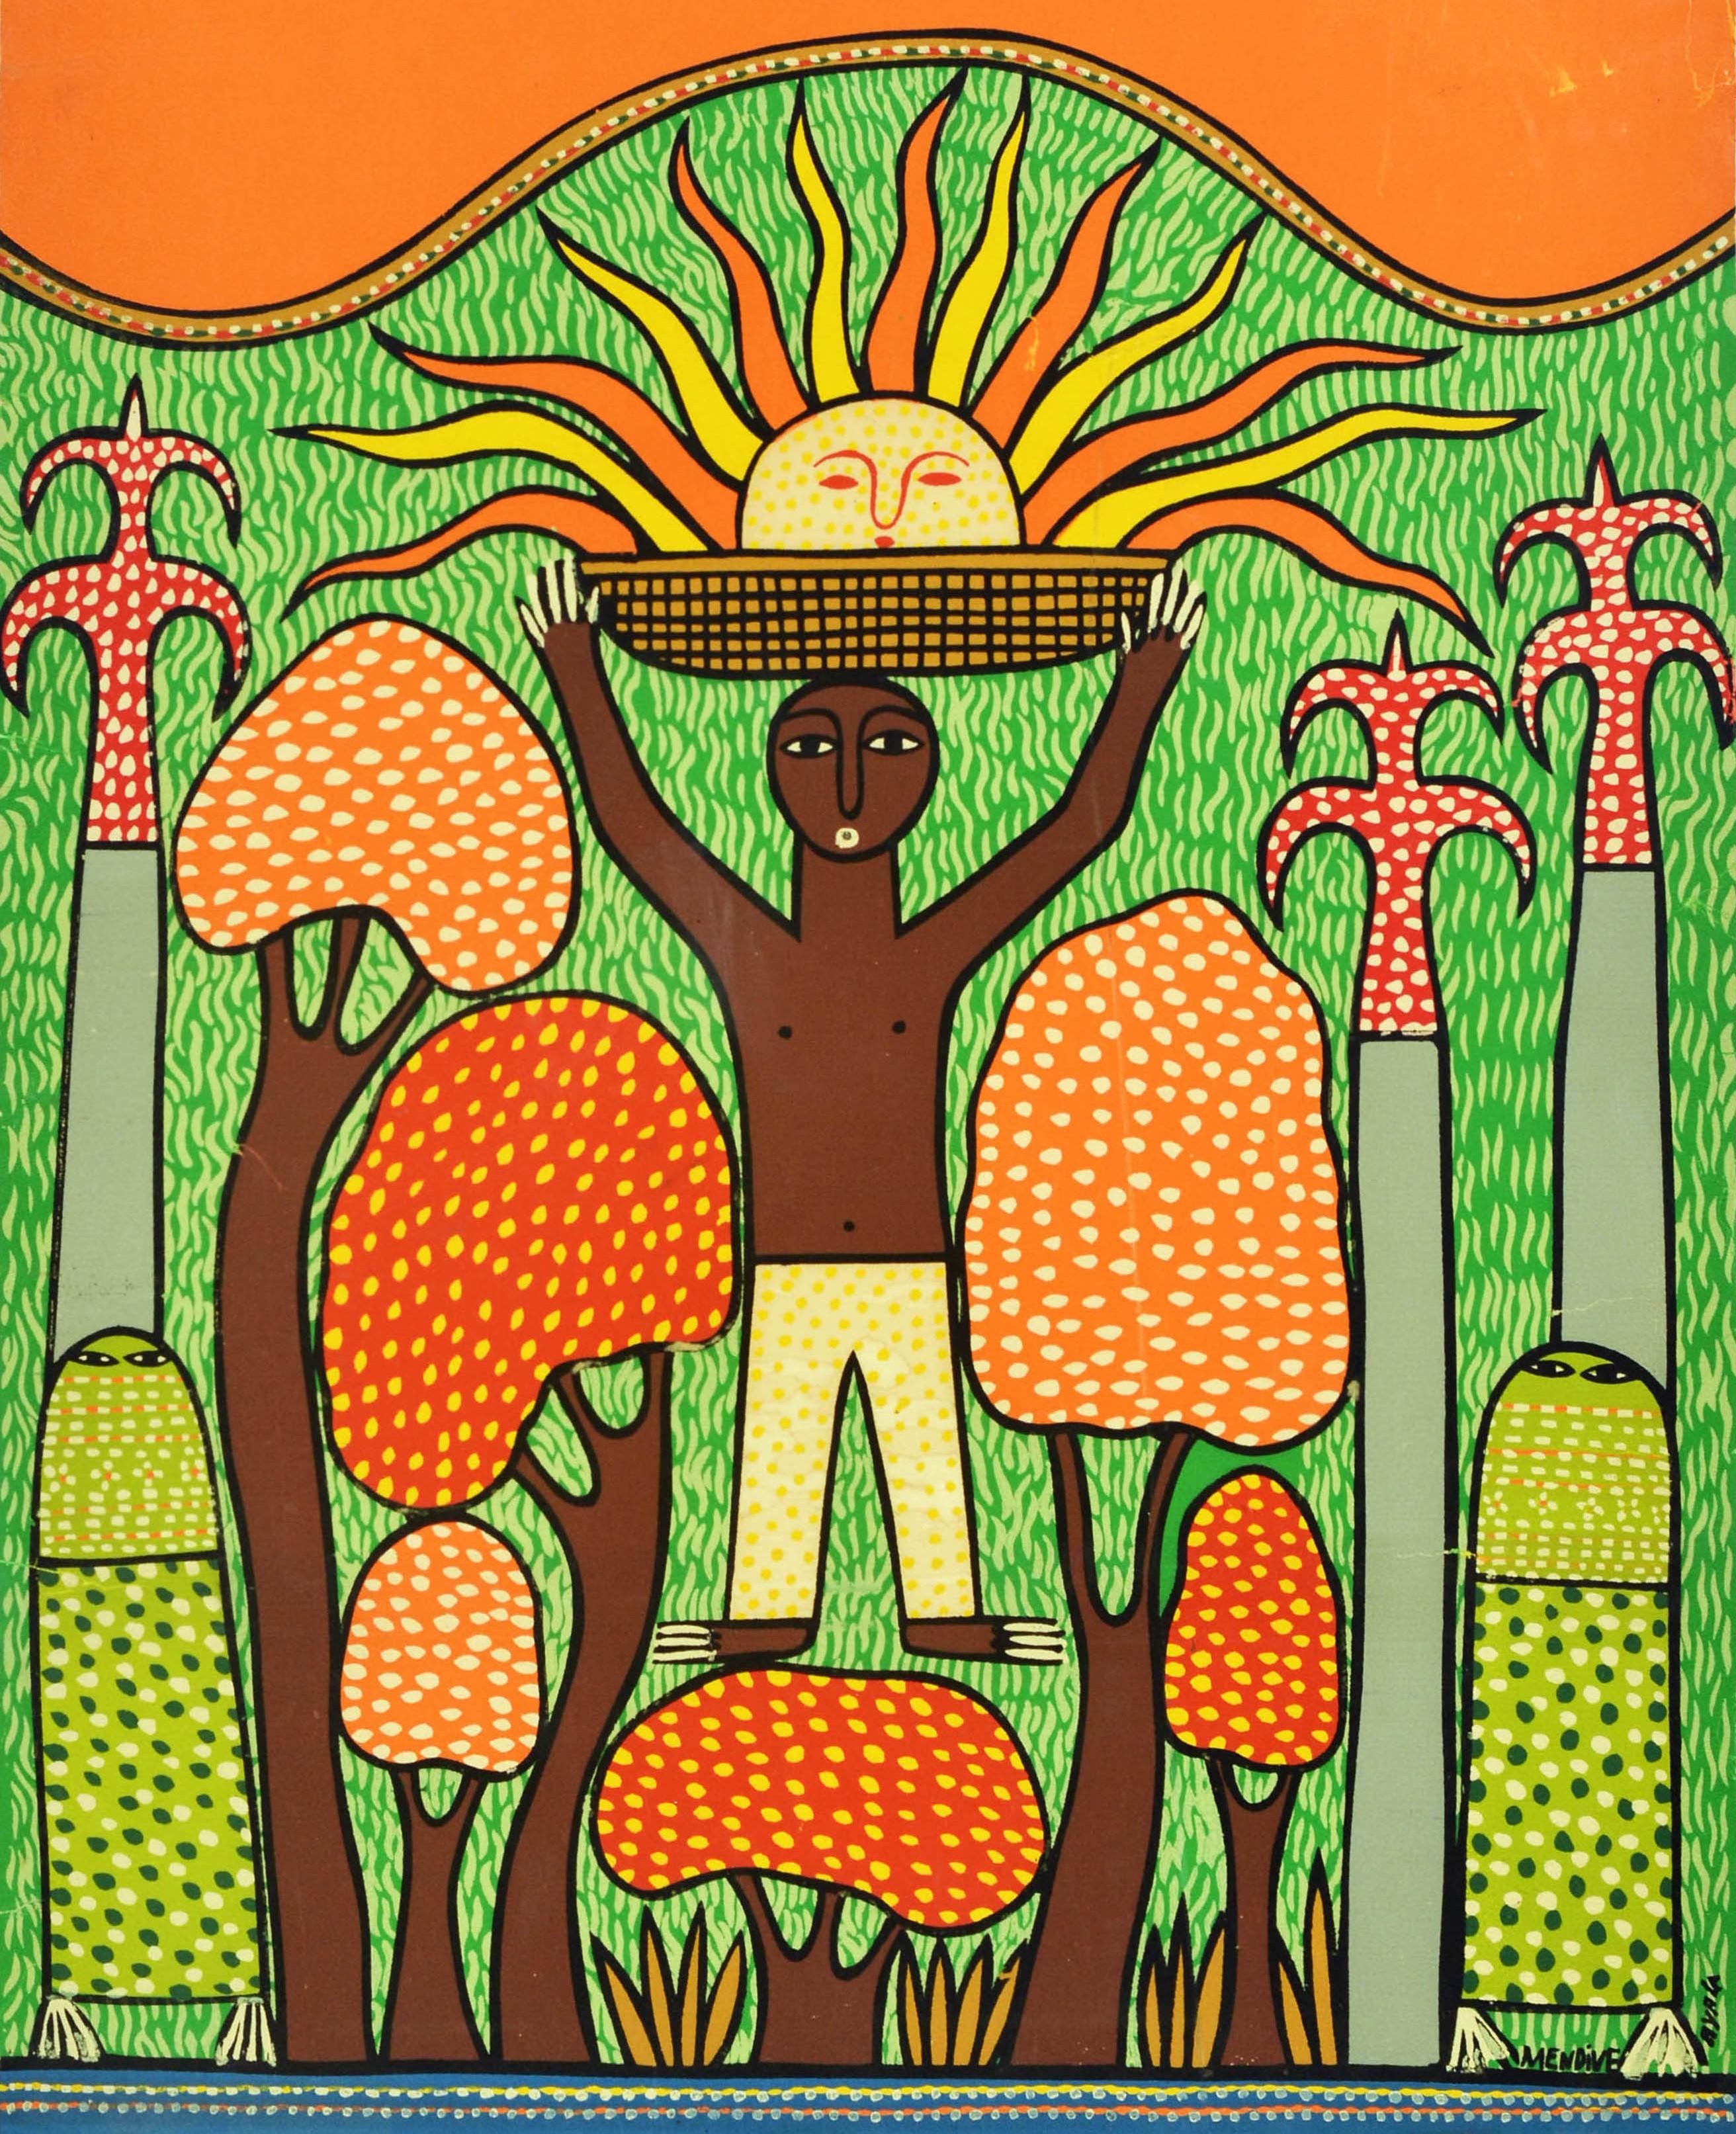 Original-Siebdruckplakat für die Carifesta 81 auf Barbados-Kuba mit einem farbenfrohen Motiv, das eine Person zeigt, die zwischen Bäumen steht und einen Korb auf dem Kopf trägt, aus dem die Sonnenstrahlen auf den grünen Hügel im Hintergrund